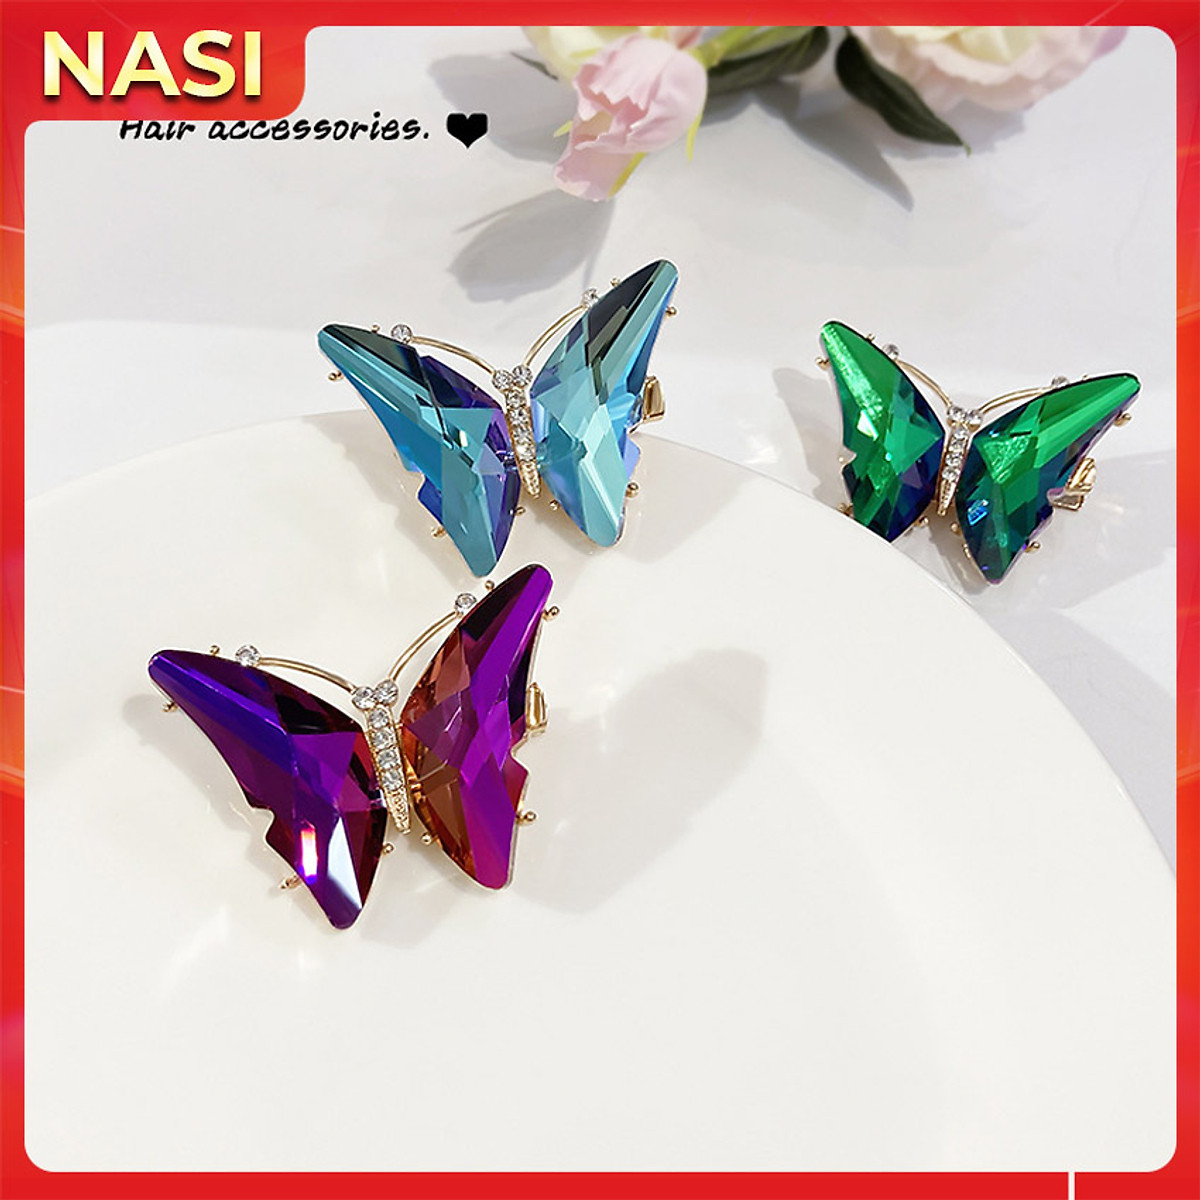 Kẹp tóc nữ hàn quốc NASI cao cấp hình bướm pha lê lấp lánh chất liệu